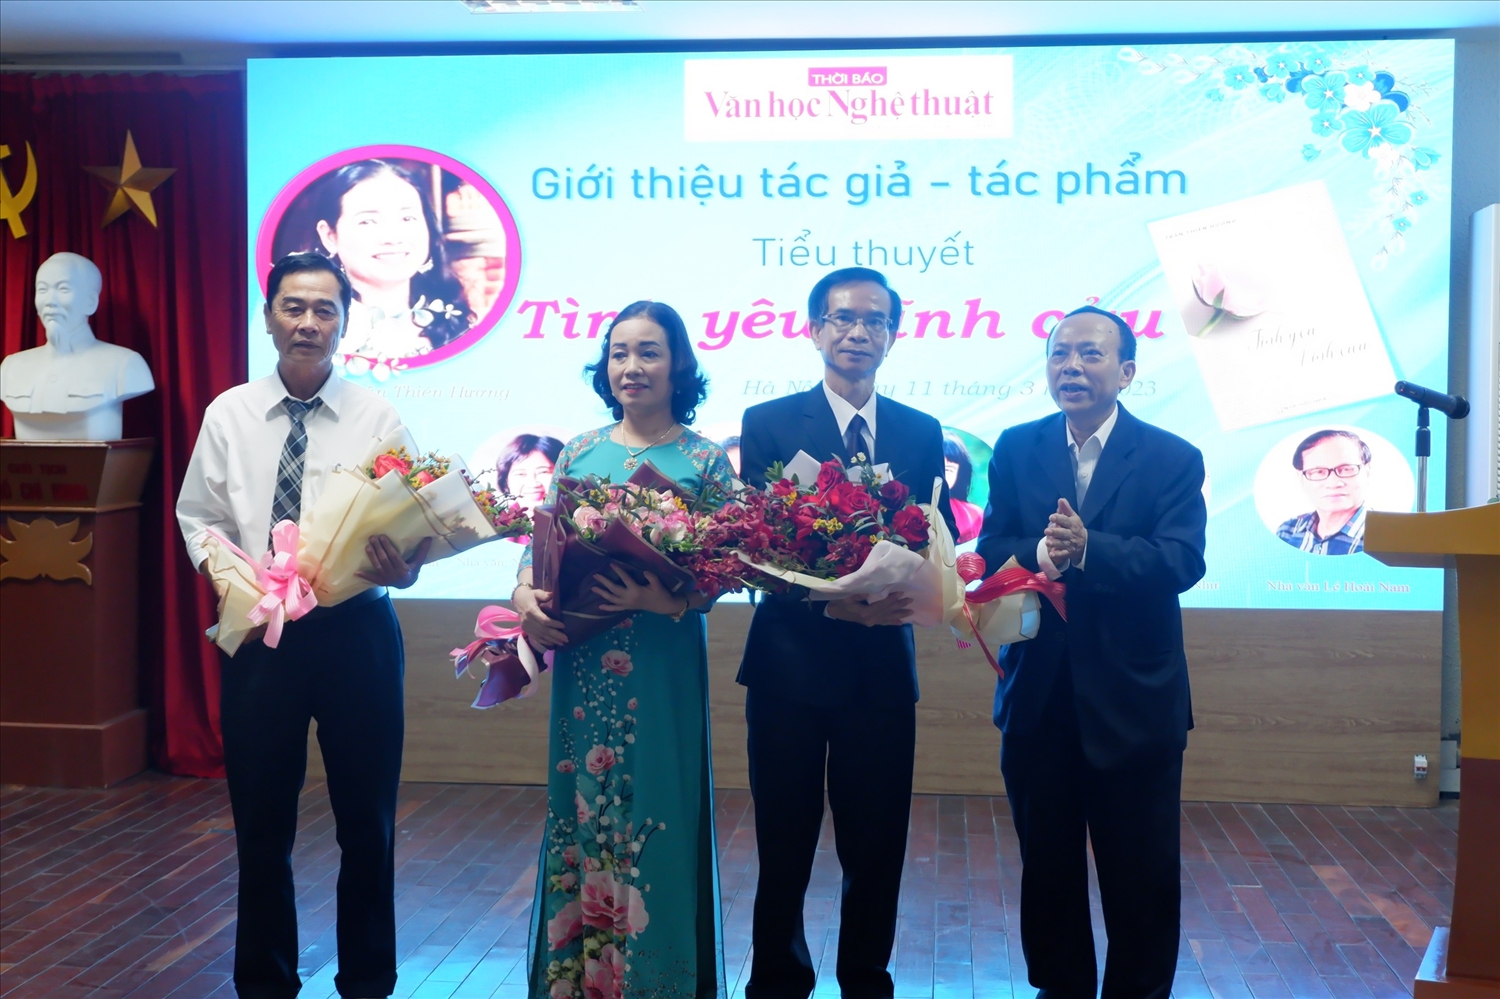 Tổng biên tập Thời báo Văn học nghệ thuật tặng hoa cho tác giả Trần Thiên Hương tại Tòa đàm ra mắt sách